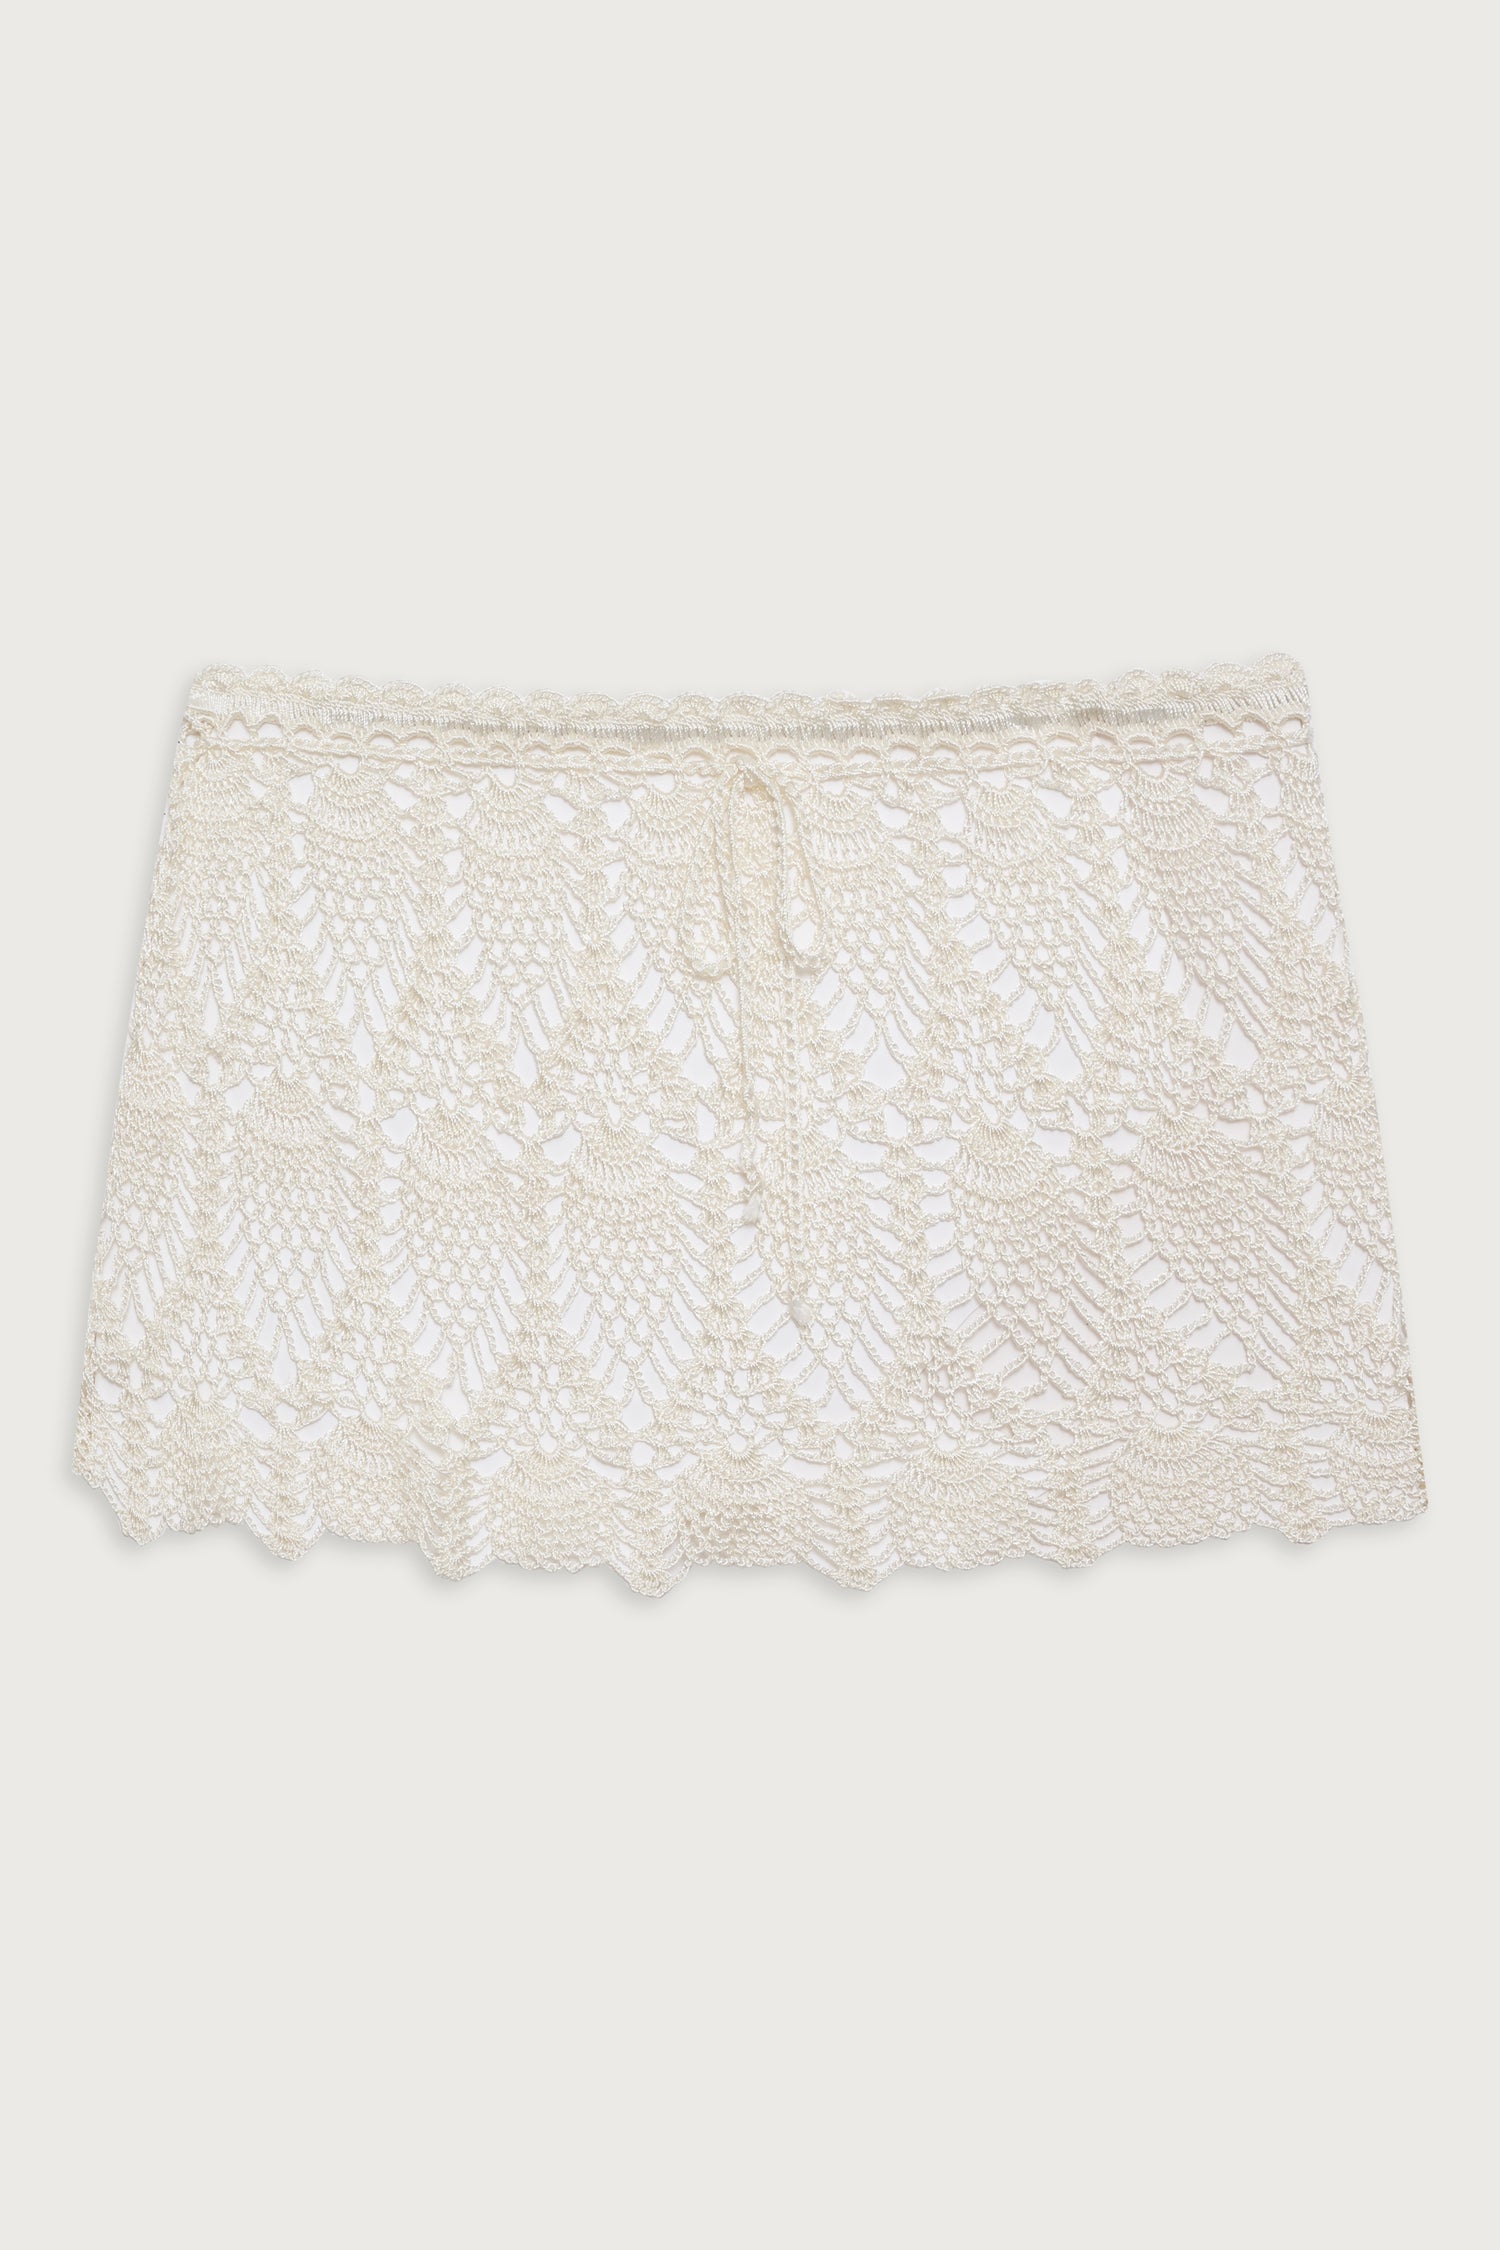 Capri Crochet Mini Skirt - White